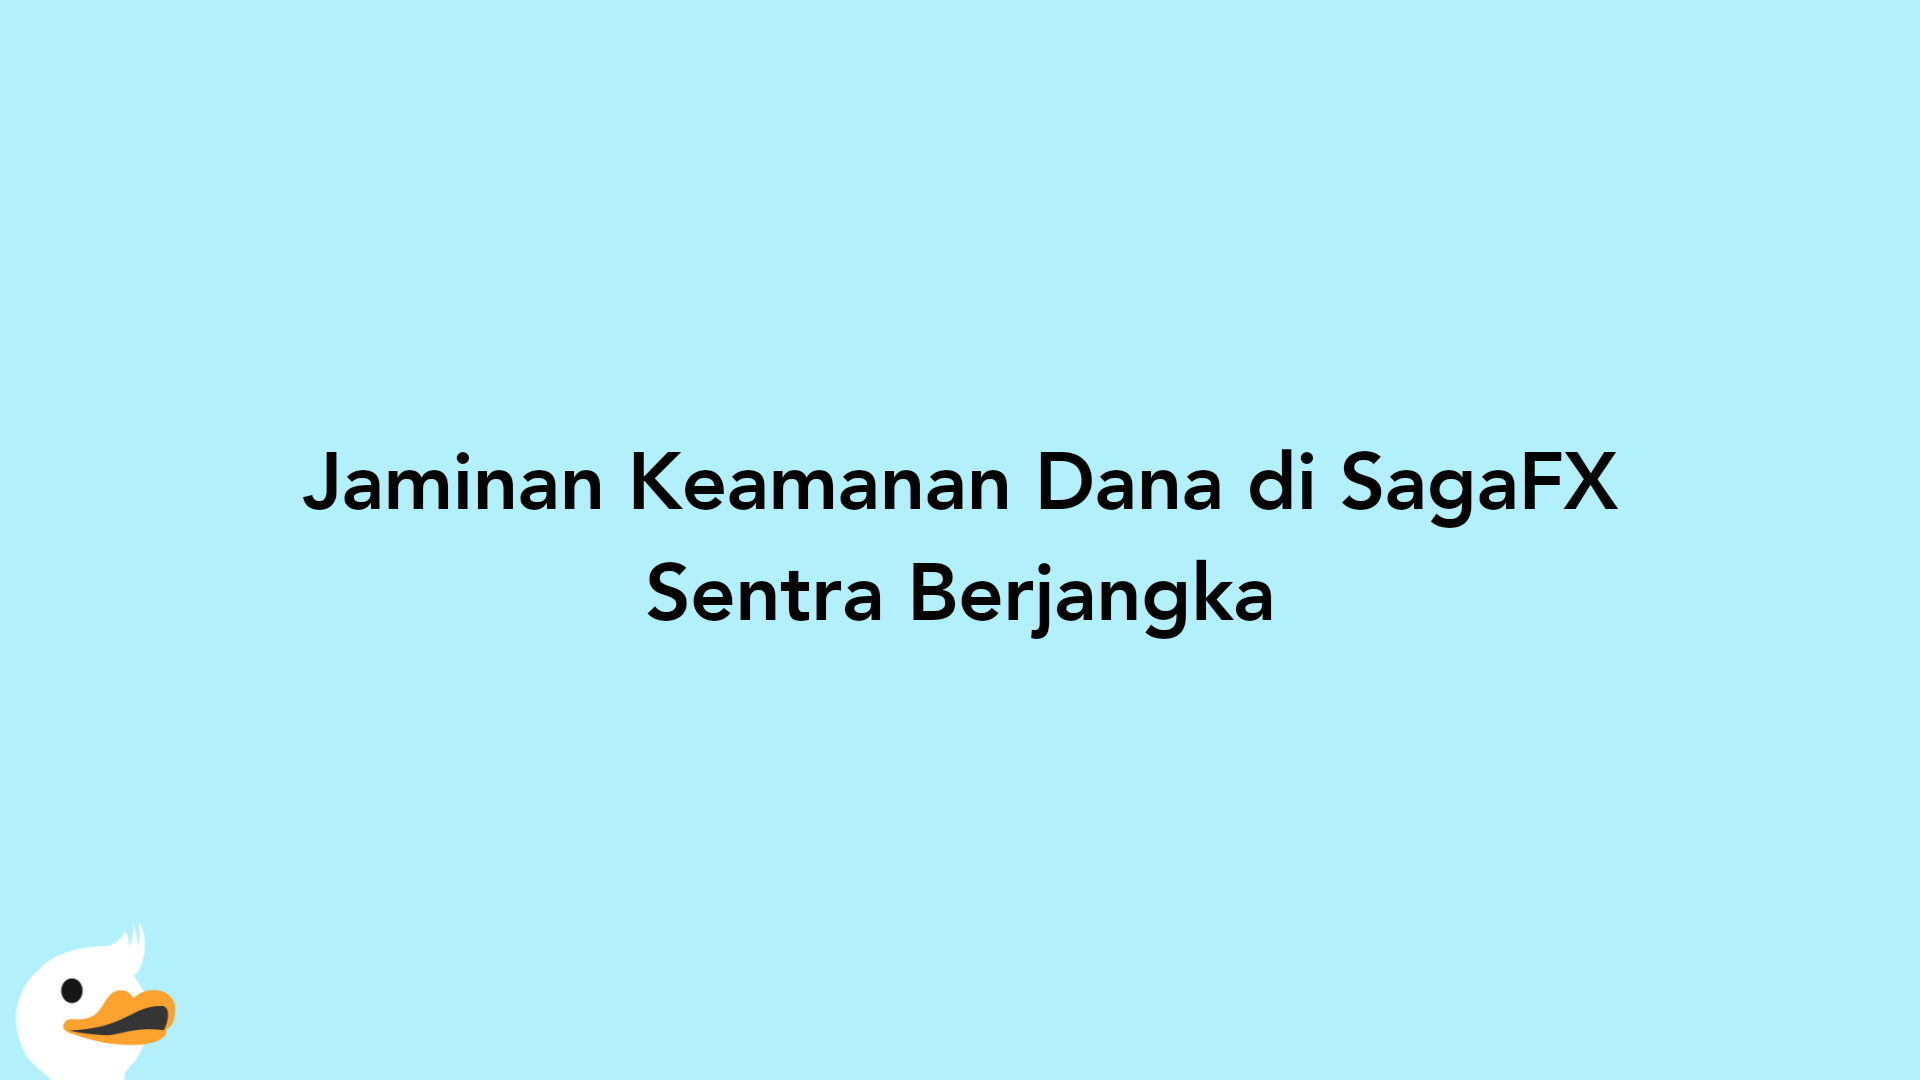 Jaminan Keamanan Dana di SagaFX Sentra Berjangka